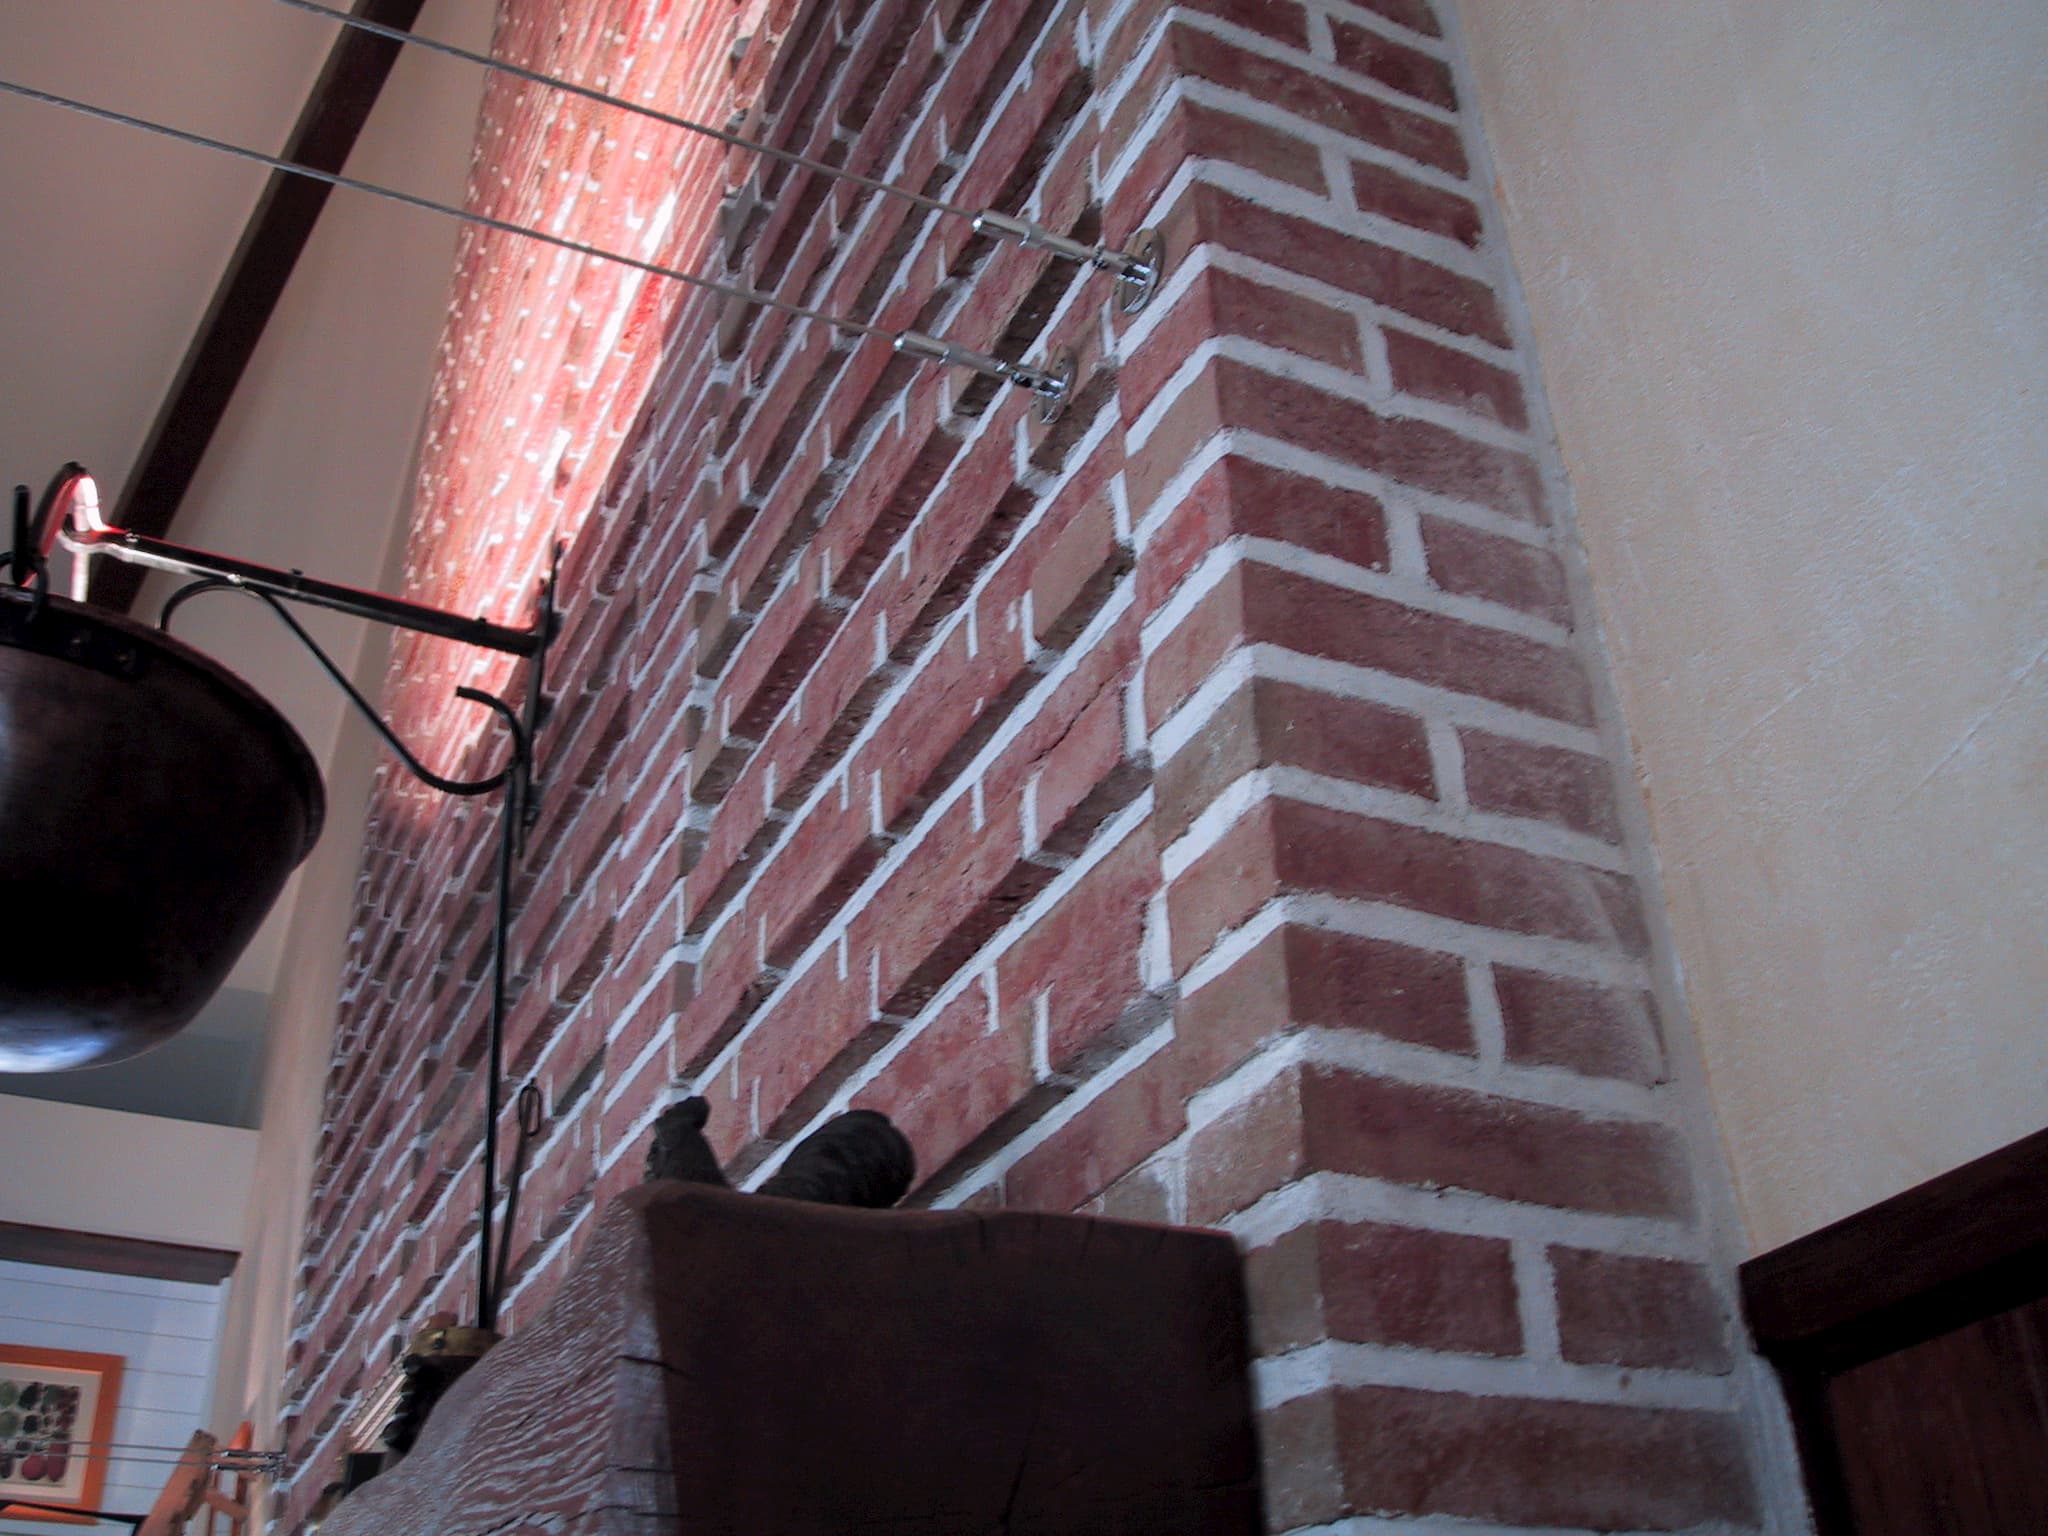 Habillage de cheminée en briques de parement ; typique des restaurants Courtepaille